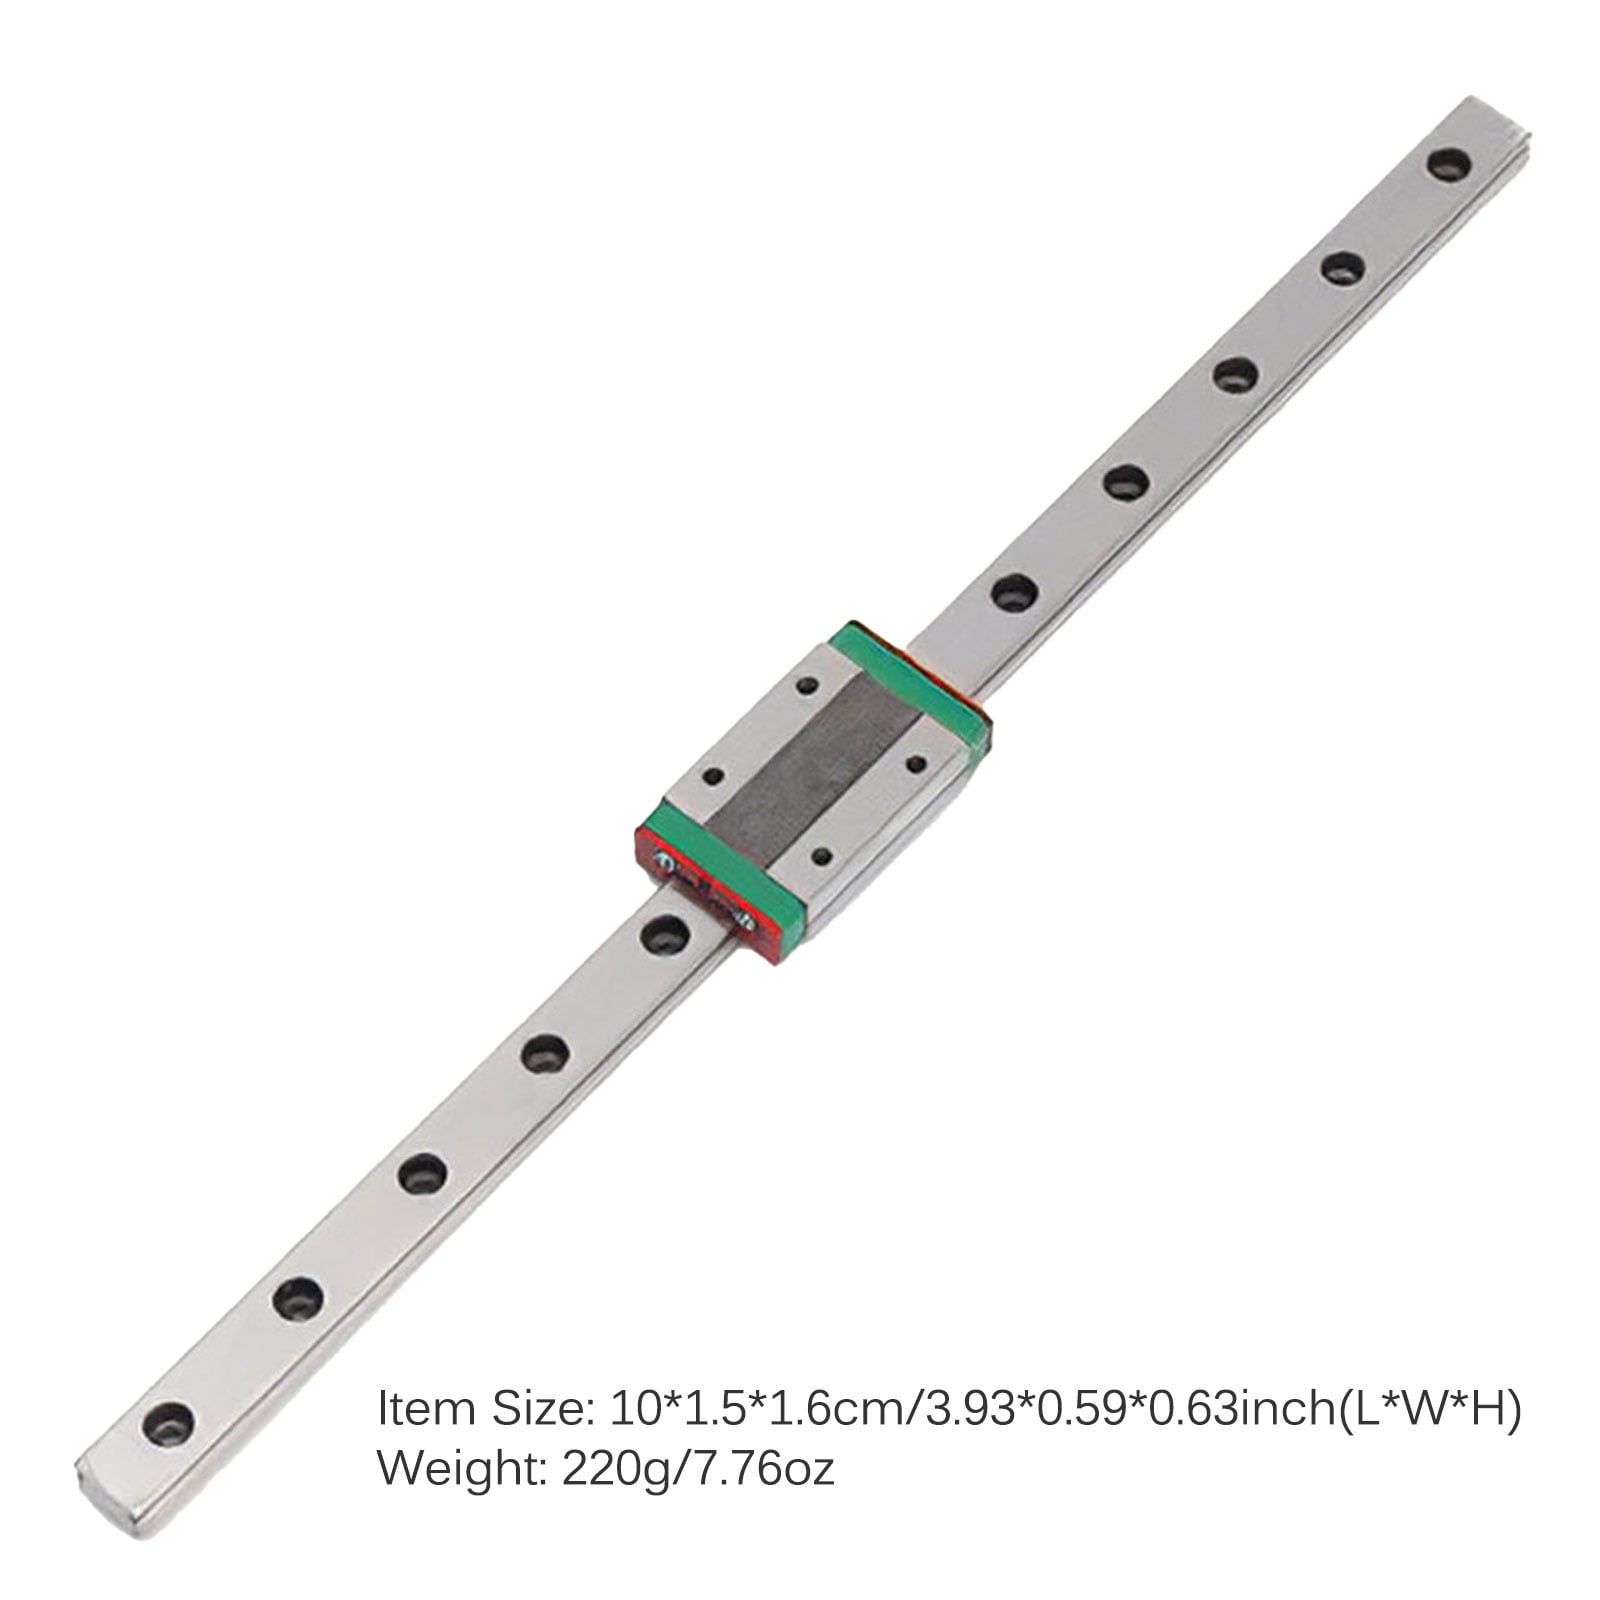 Mini MGN15H Extension Guide Rail Sliding Block Linear Sliding Device 